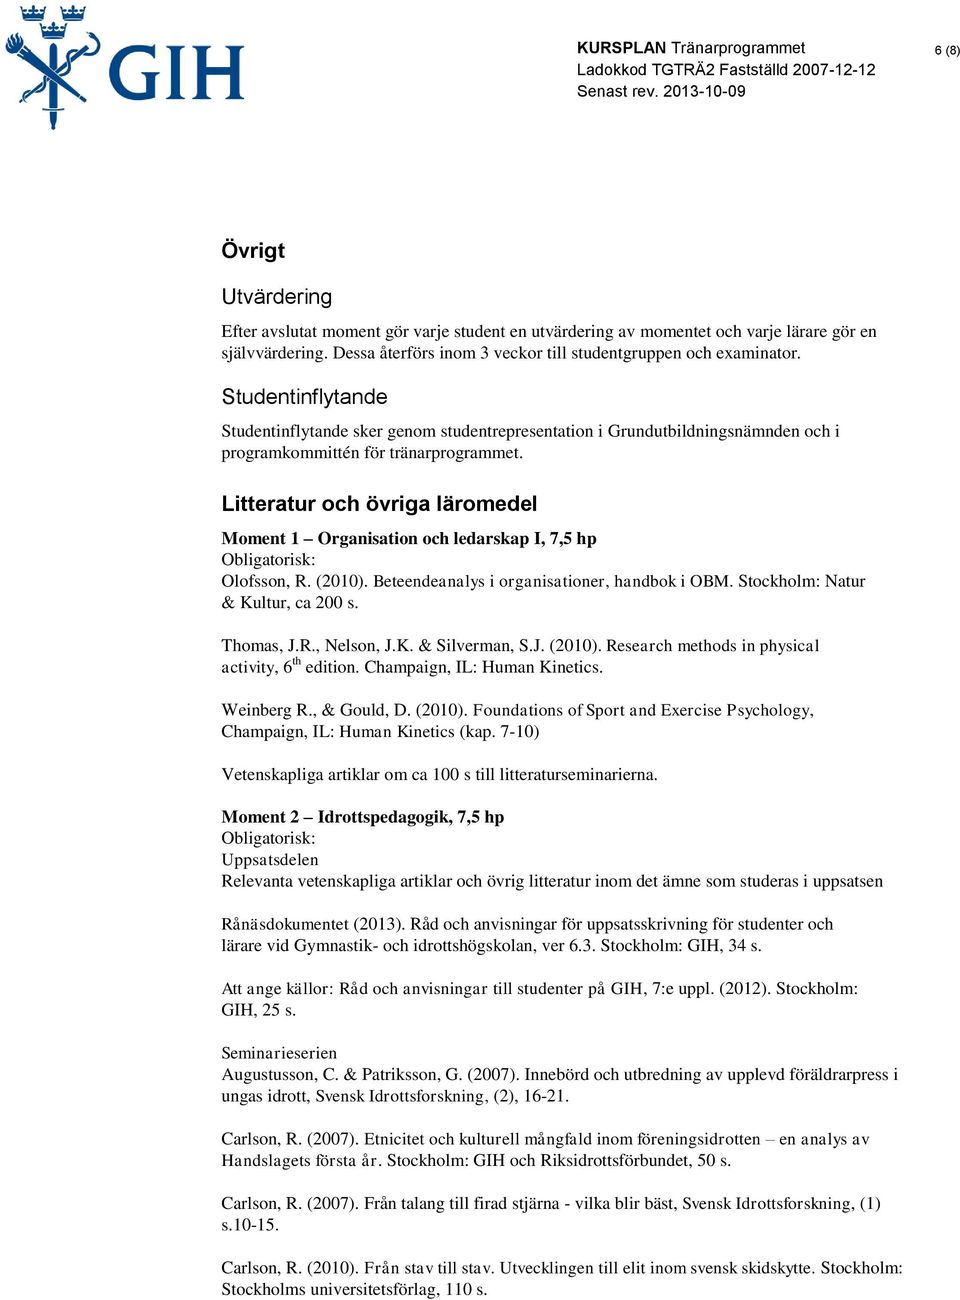 Litteratur och övriga läromedel Moment 1 Organisation och ledarskap I, 7,5 hp Obligatorisk: Olofsson, R. (2010). Beteendeanalys i organisationer, handbok i OBM. Stockholm: Natur & Kultur, ca 200 s.